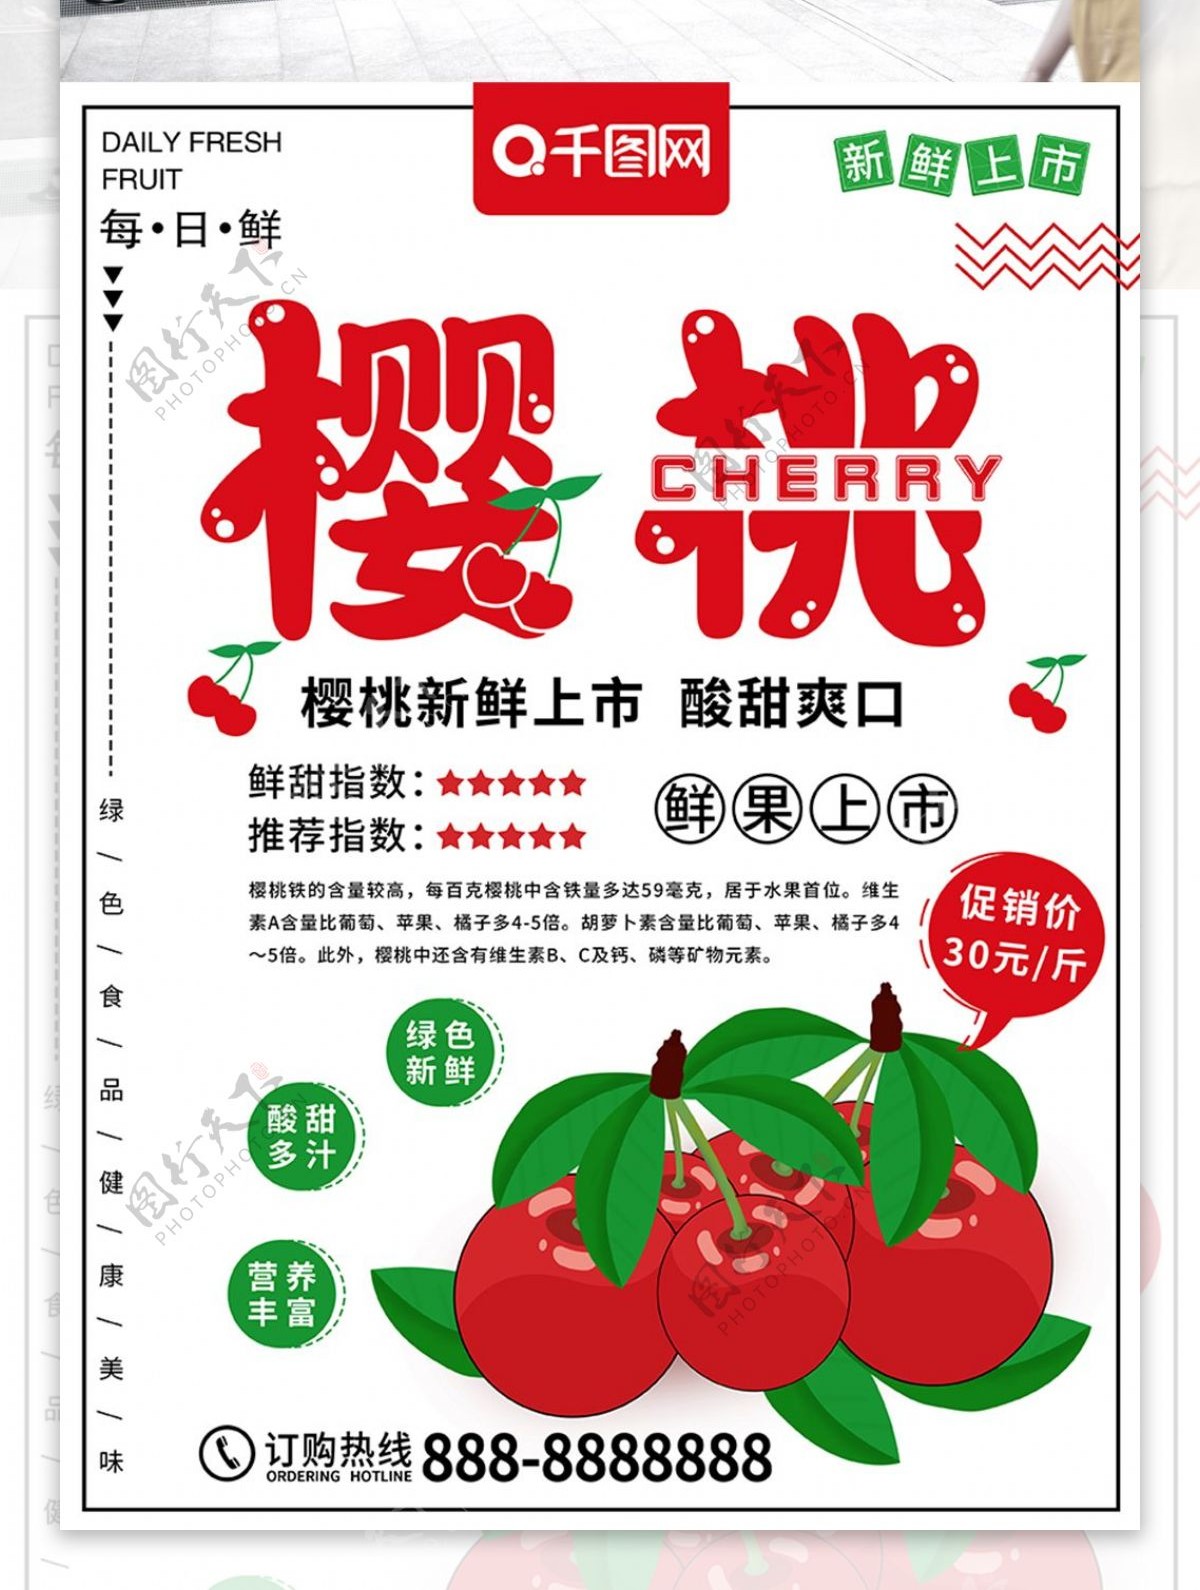 原创手绘樱桃水果食物促销海报